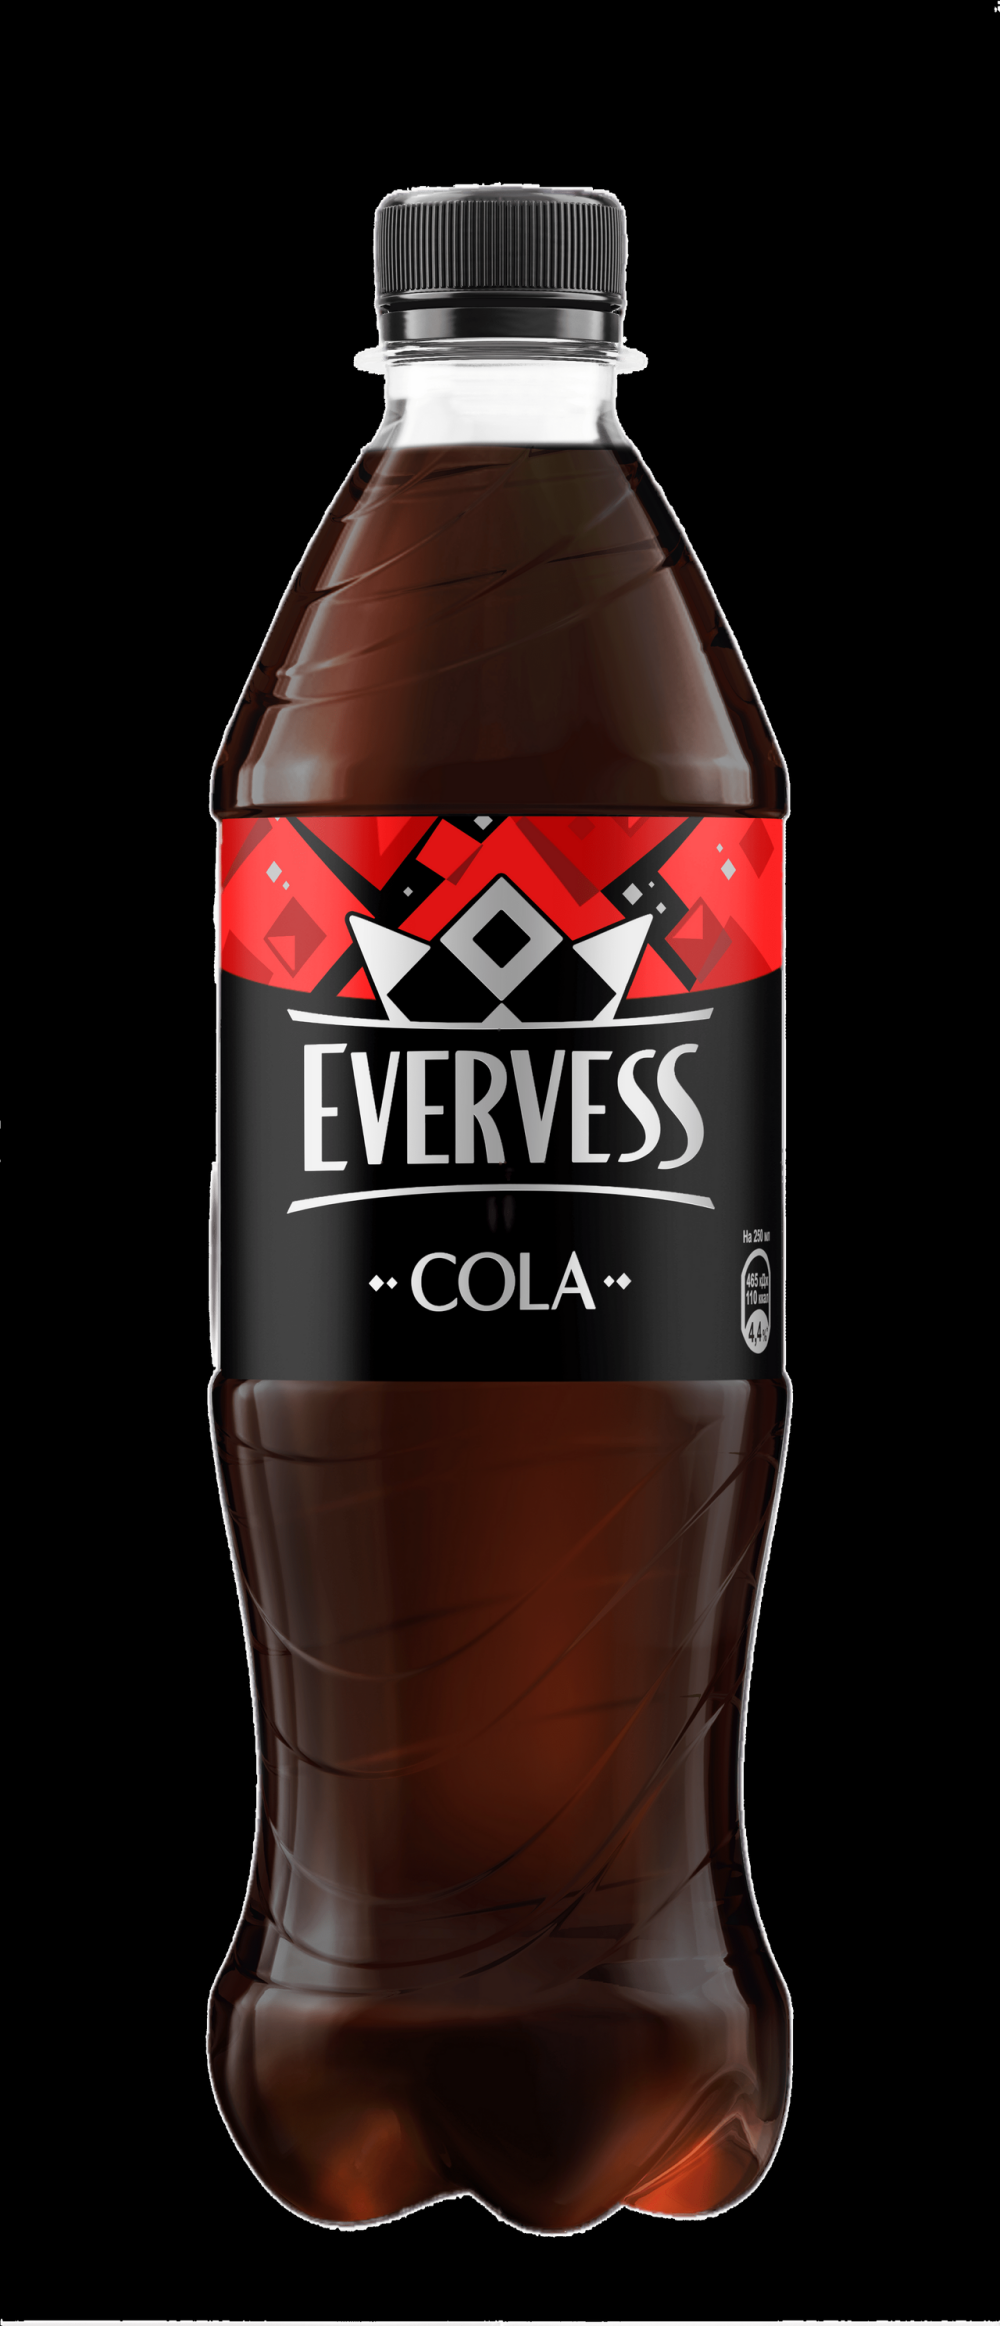 Evervess cola